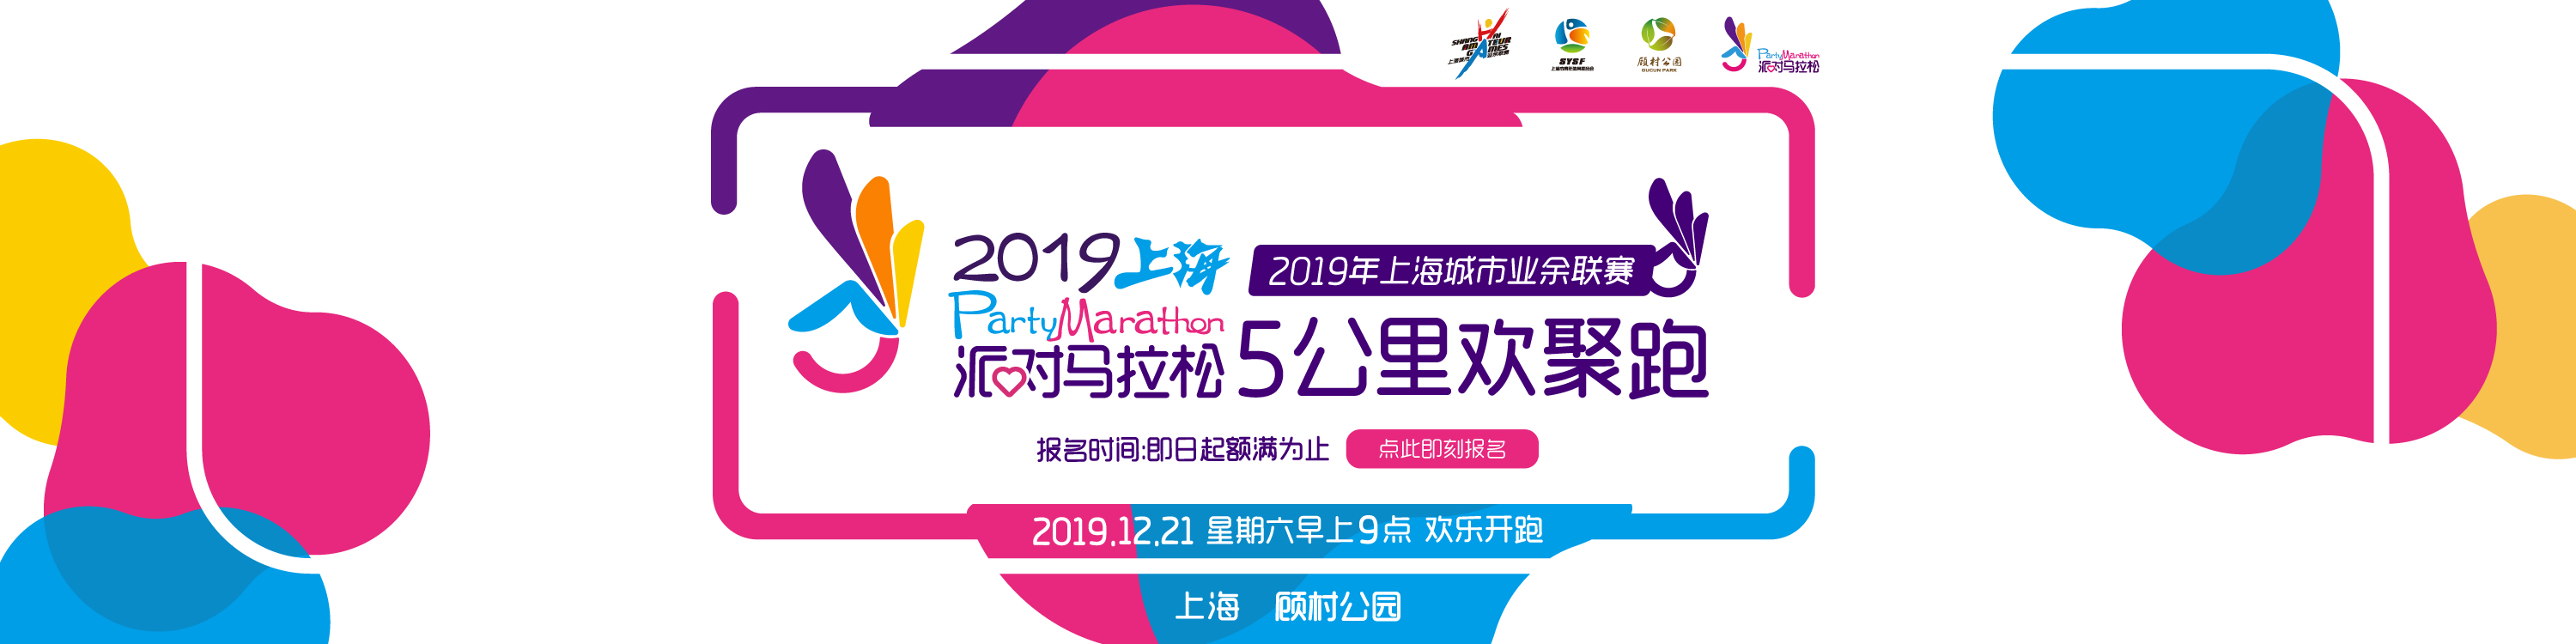 2019派对马拉松上海5公里欢聚跑